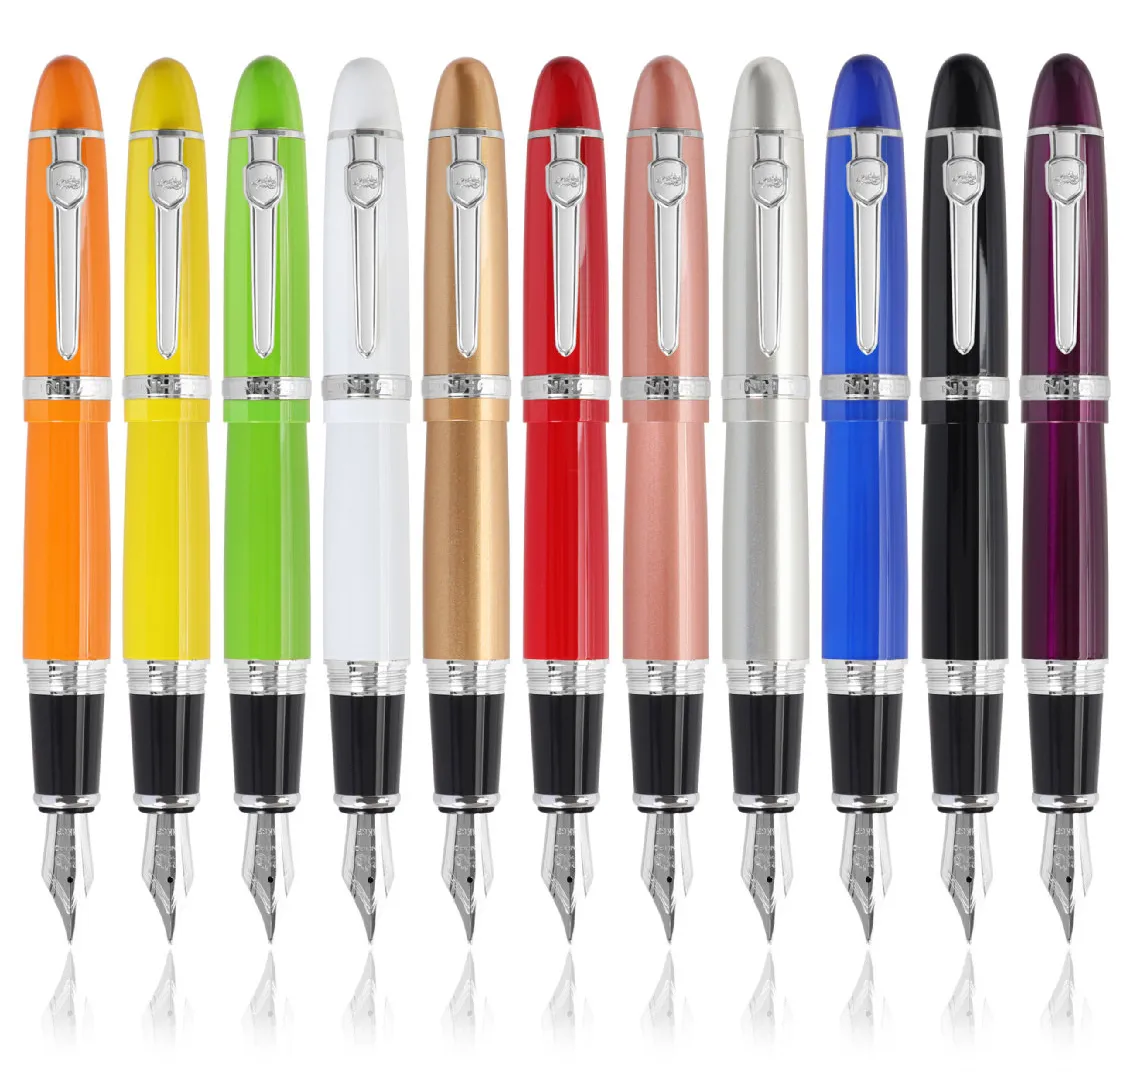 نافورة القلم جودة عالية كليب الأقلام الكلاسيكية نافورة القلم الأعمال هدية الكتابة للقرطاسية مكتب اللوازم 38844452545